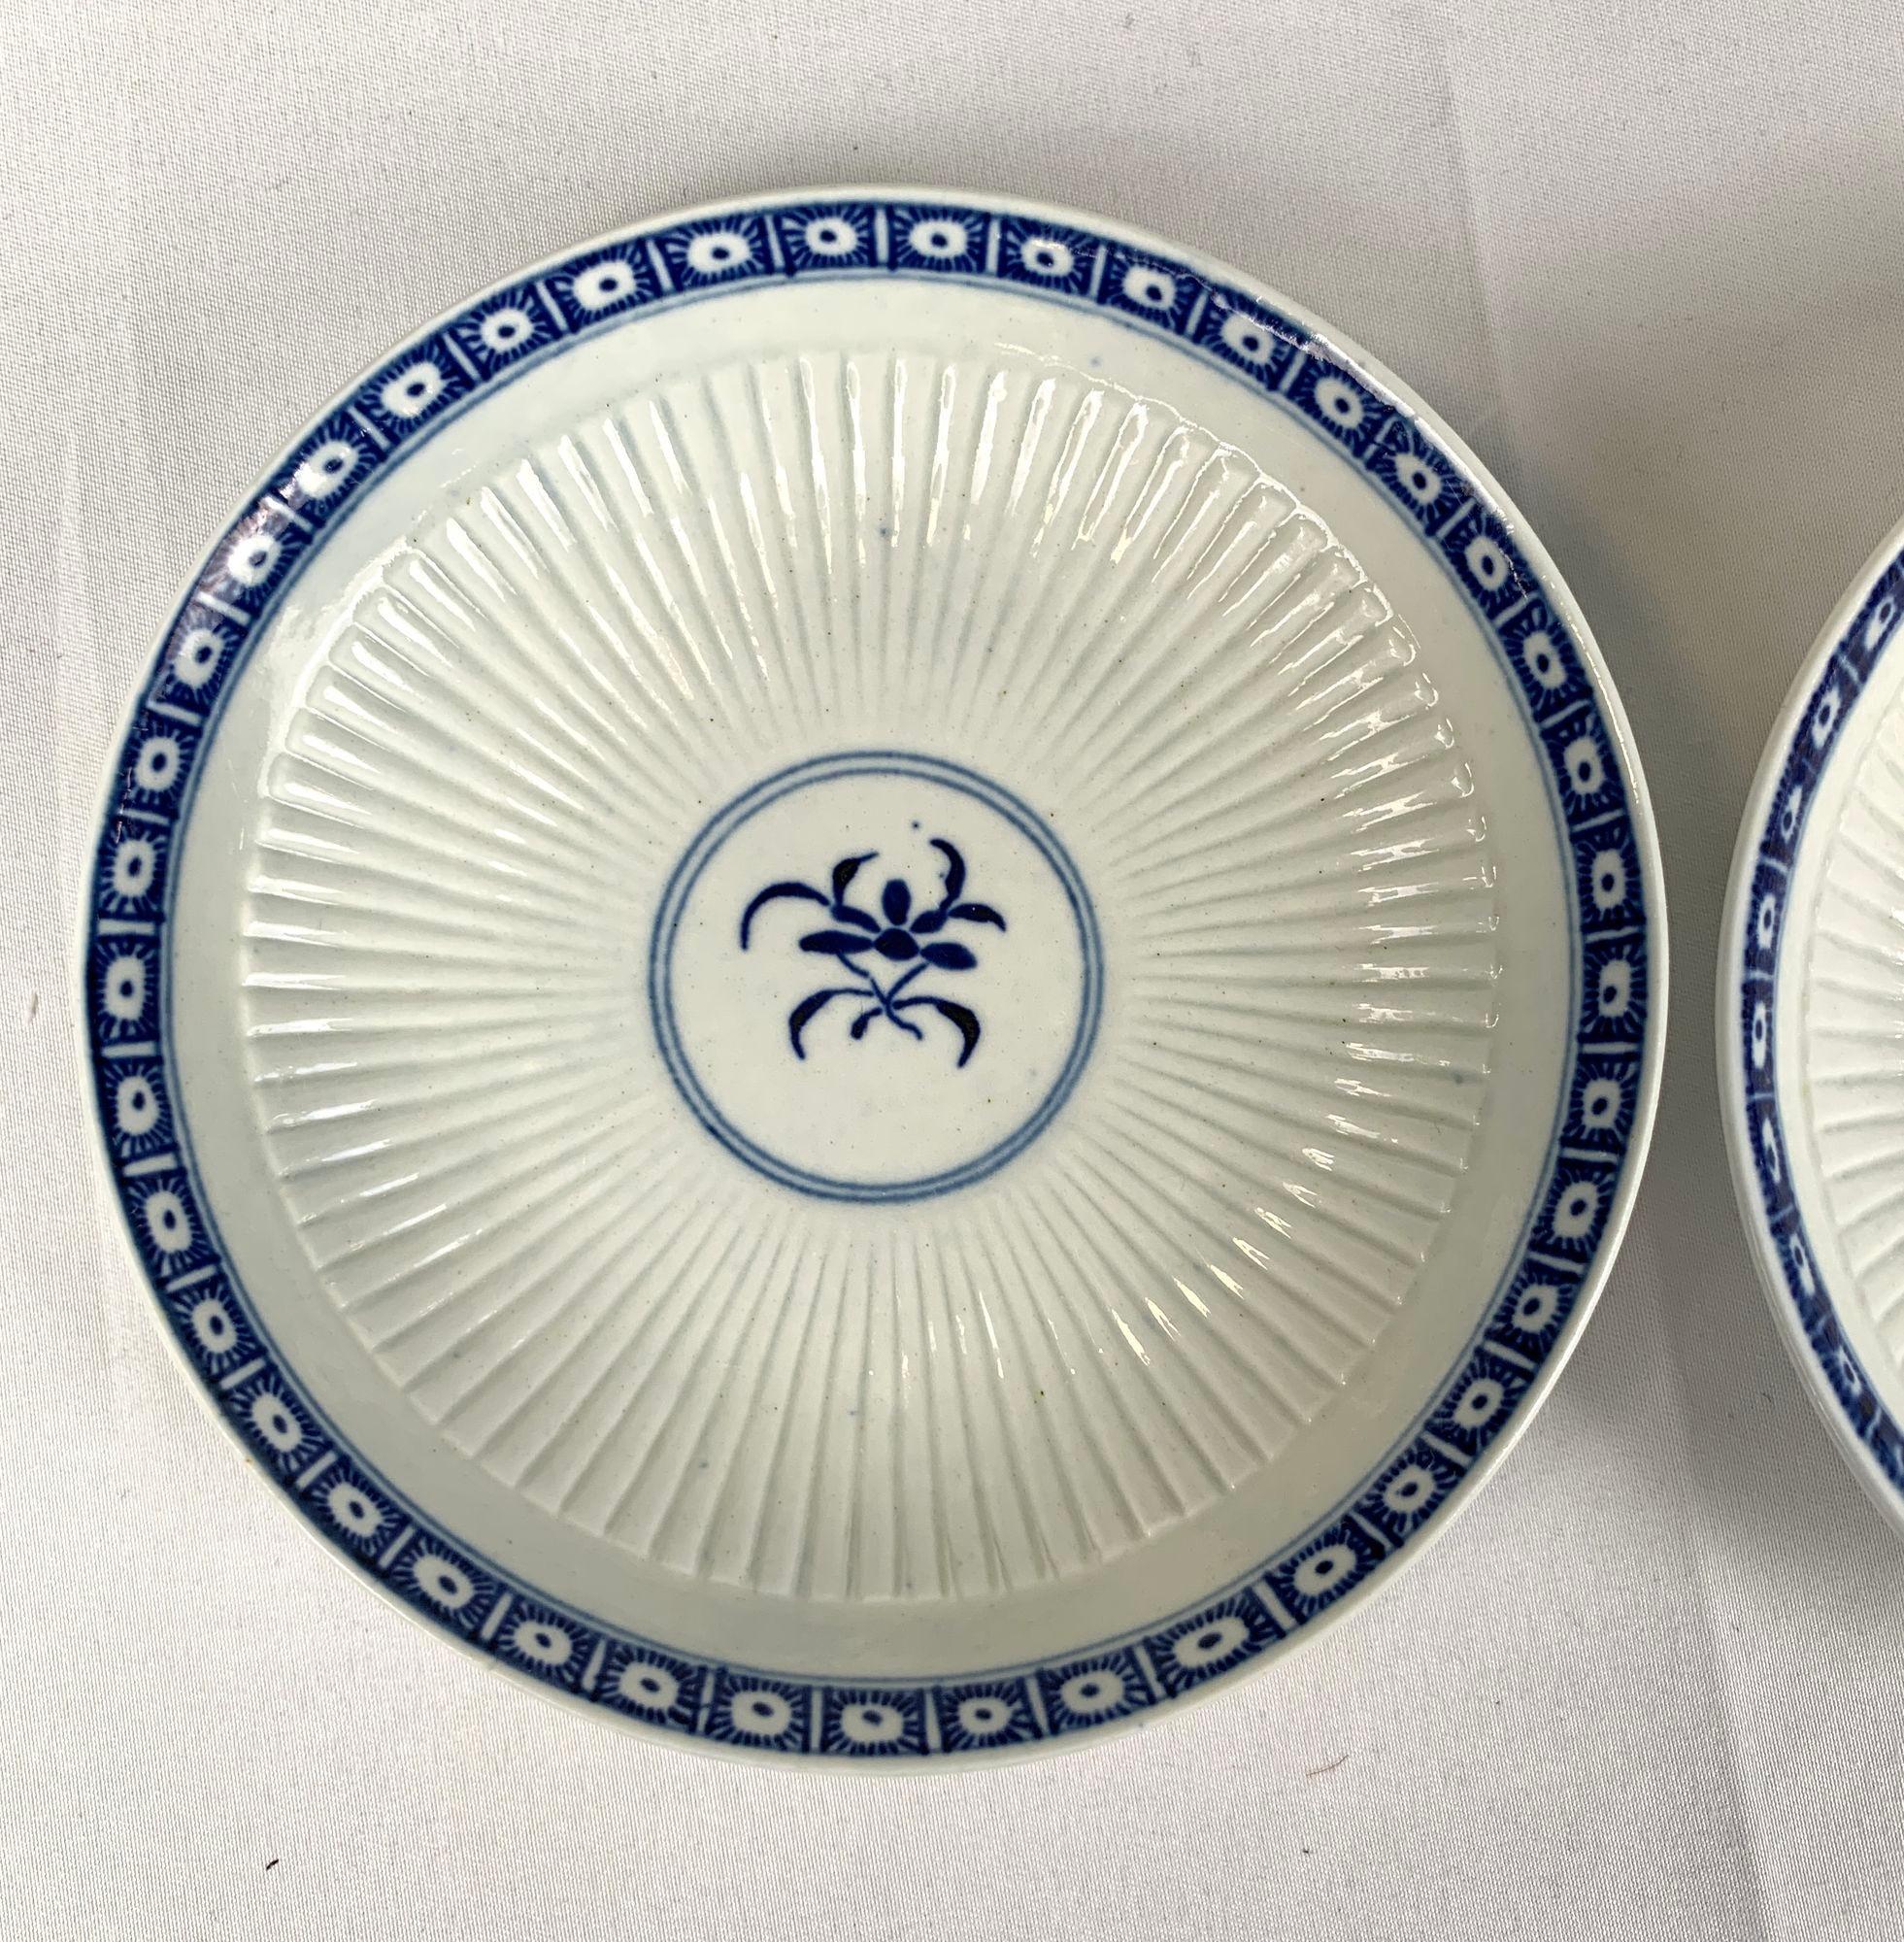 Cette ravissante paire de soucoupes en porcelaine bleue et blanche de la première période de Whiting est décorée de l'élégant motif Dark Sprig Centre.
Les soucoupes ont été fabriquées à l'usine de Worcester vers 1765.
La porcelaine est cannelée avec